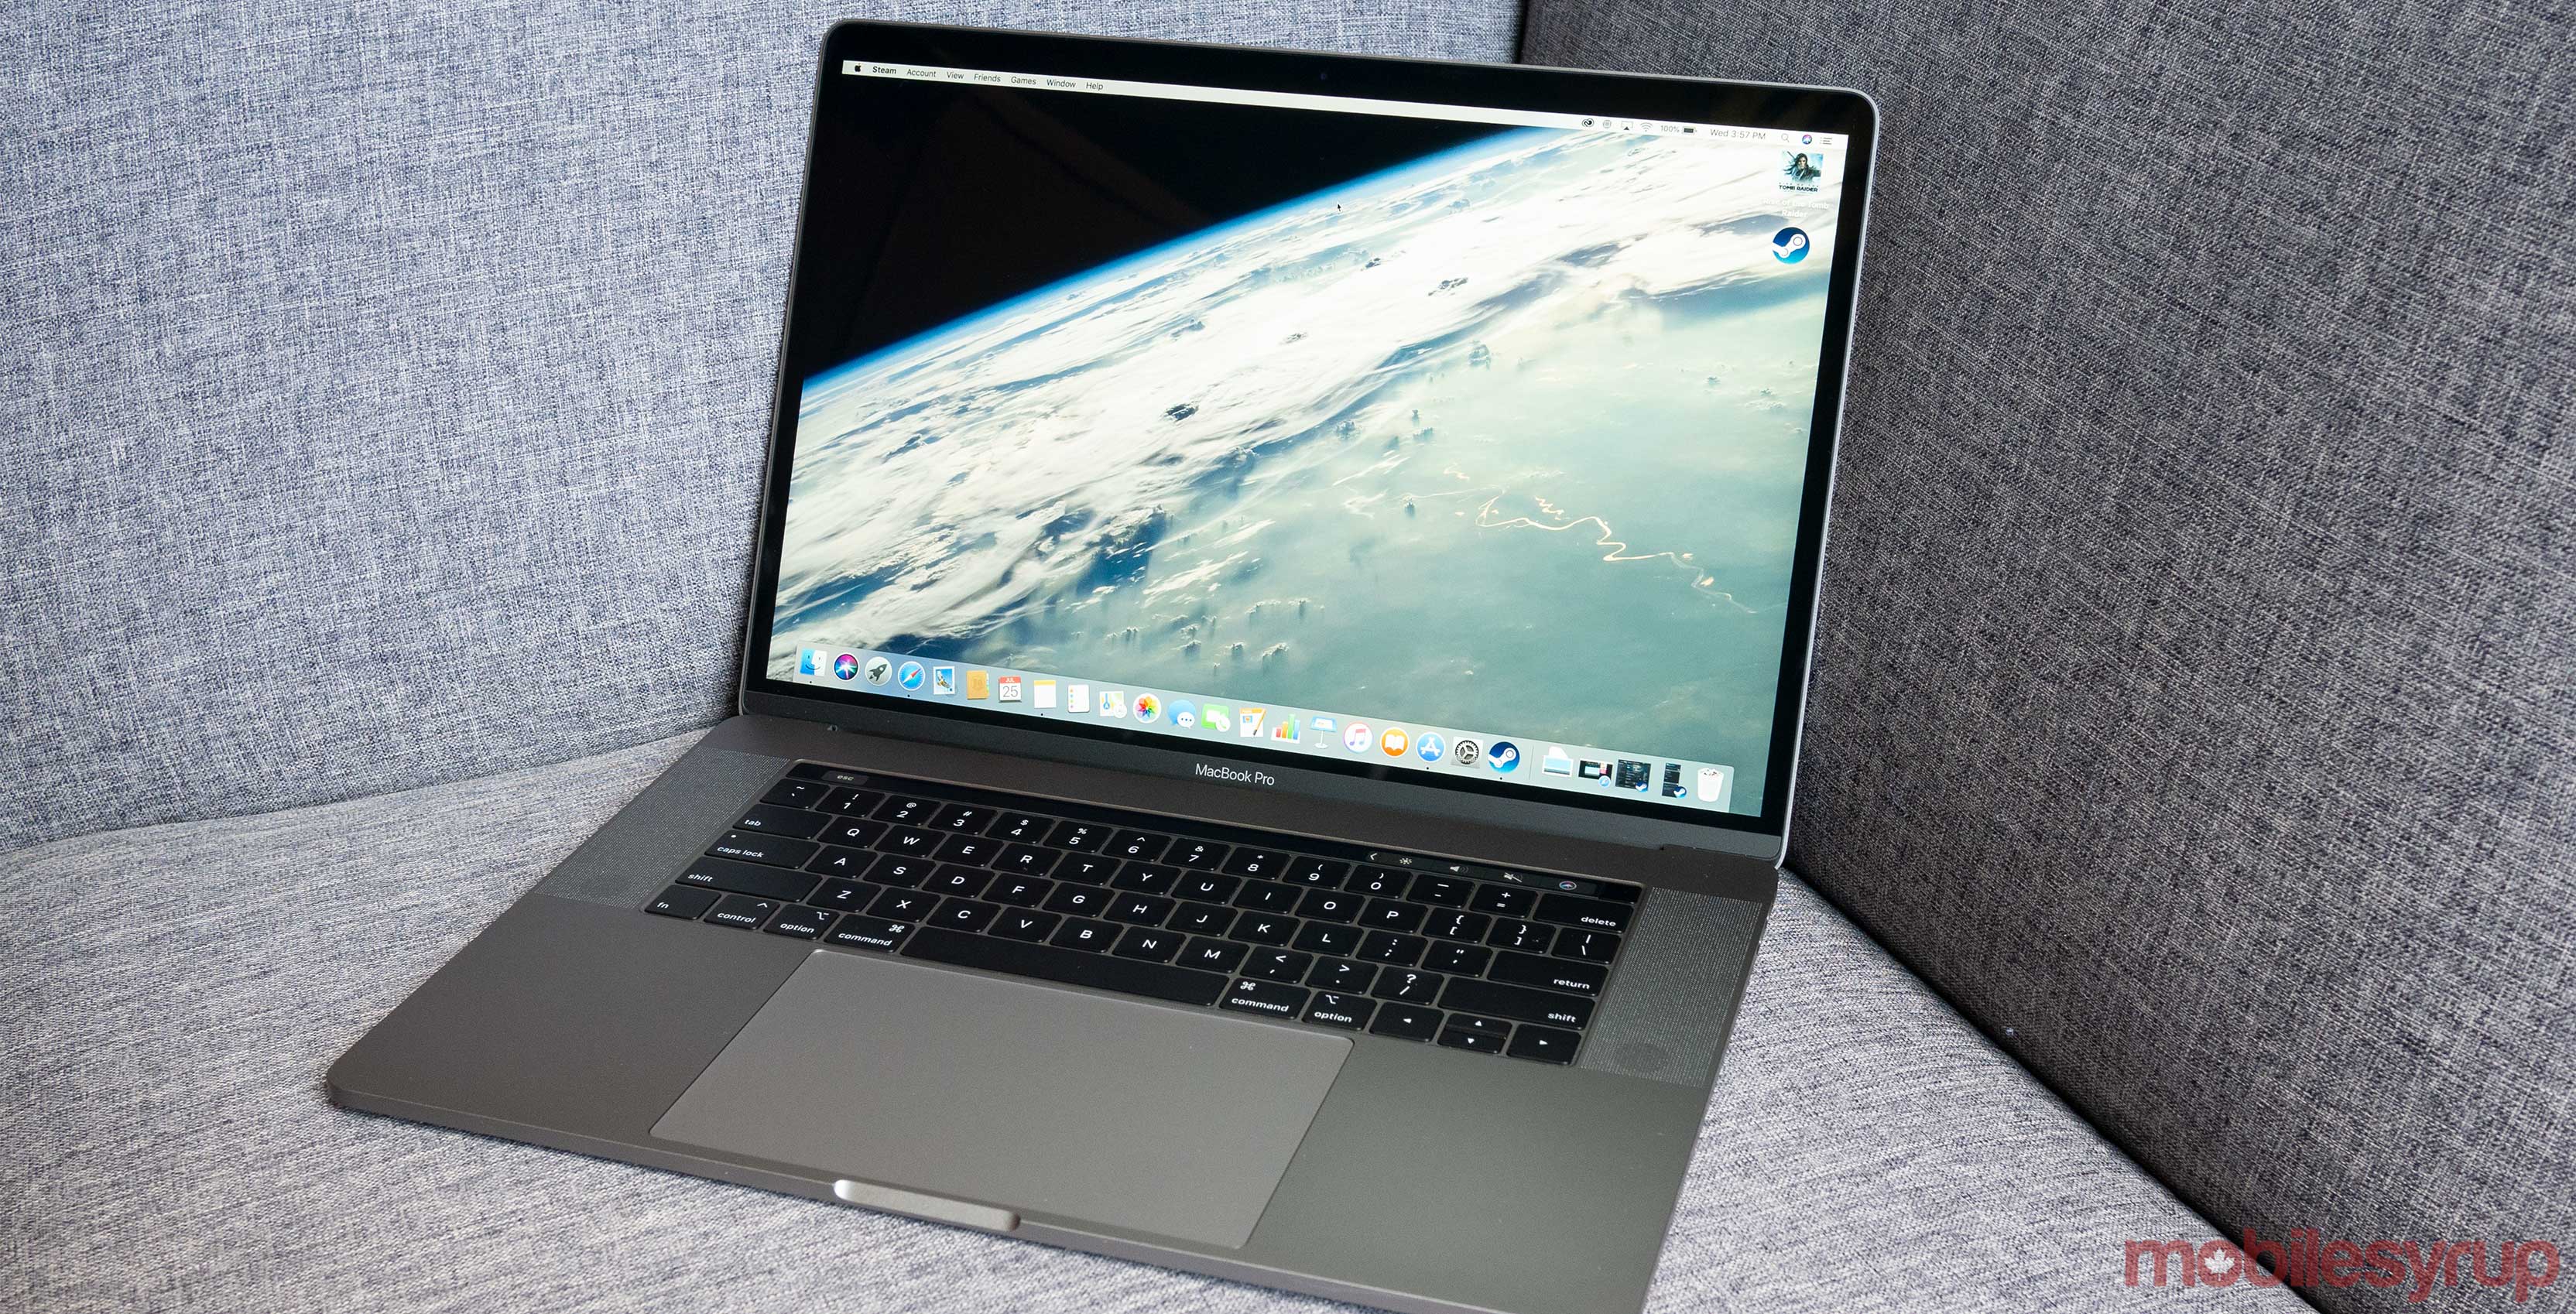 MacBook Pro 2018 15-inch